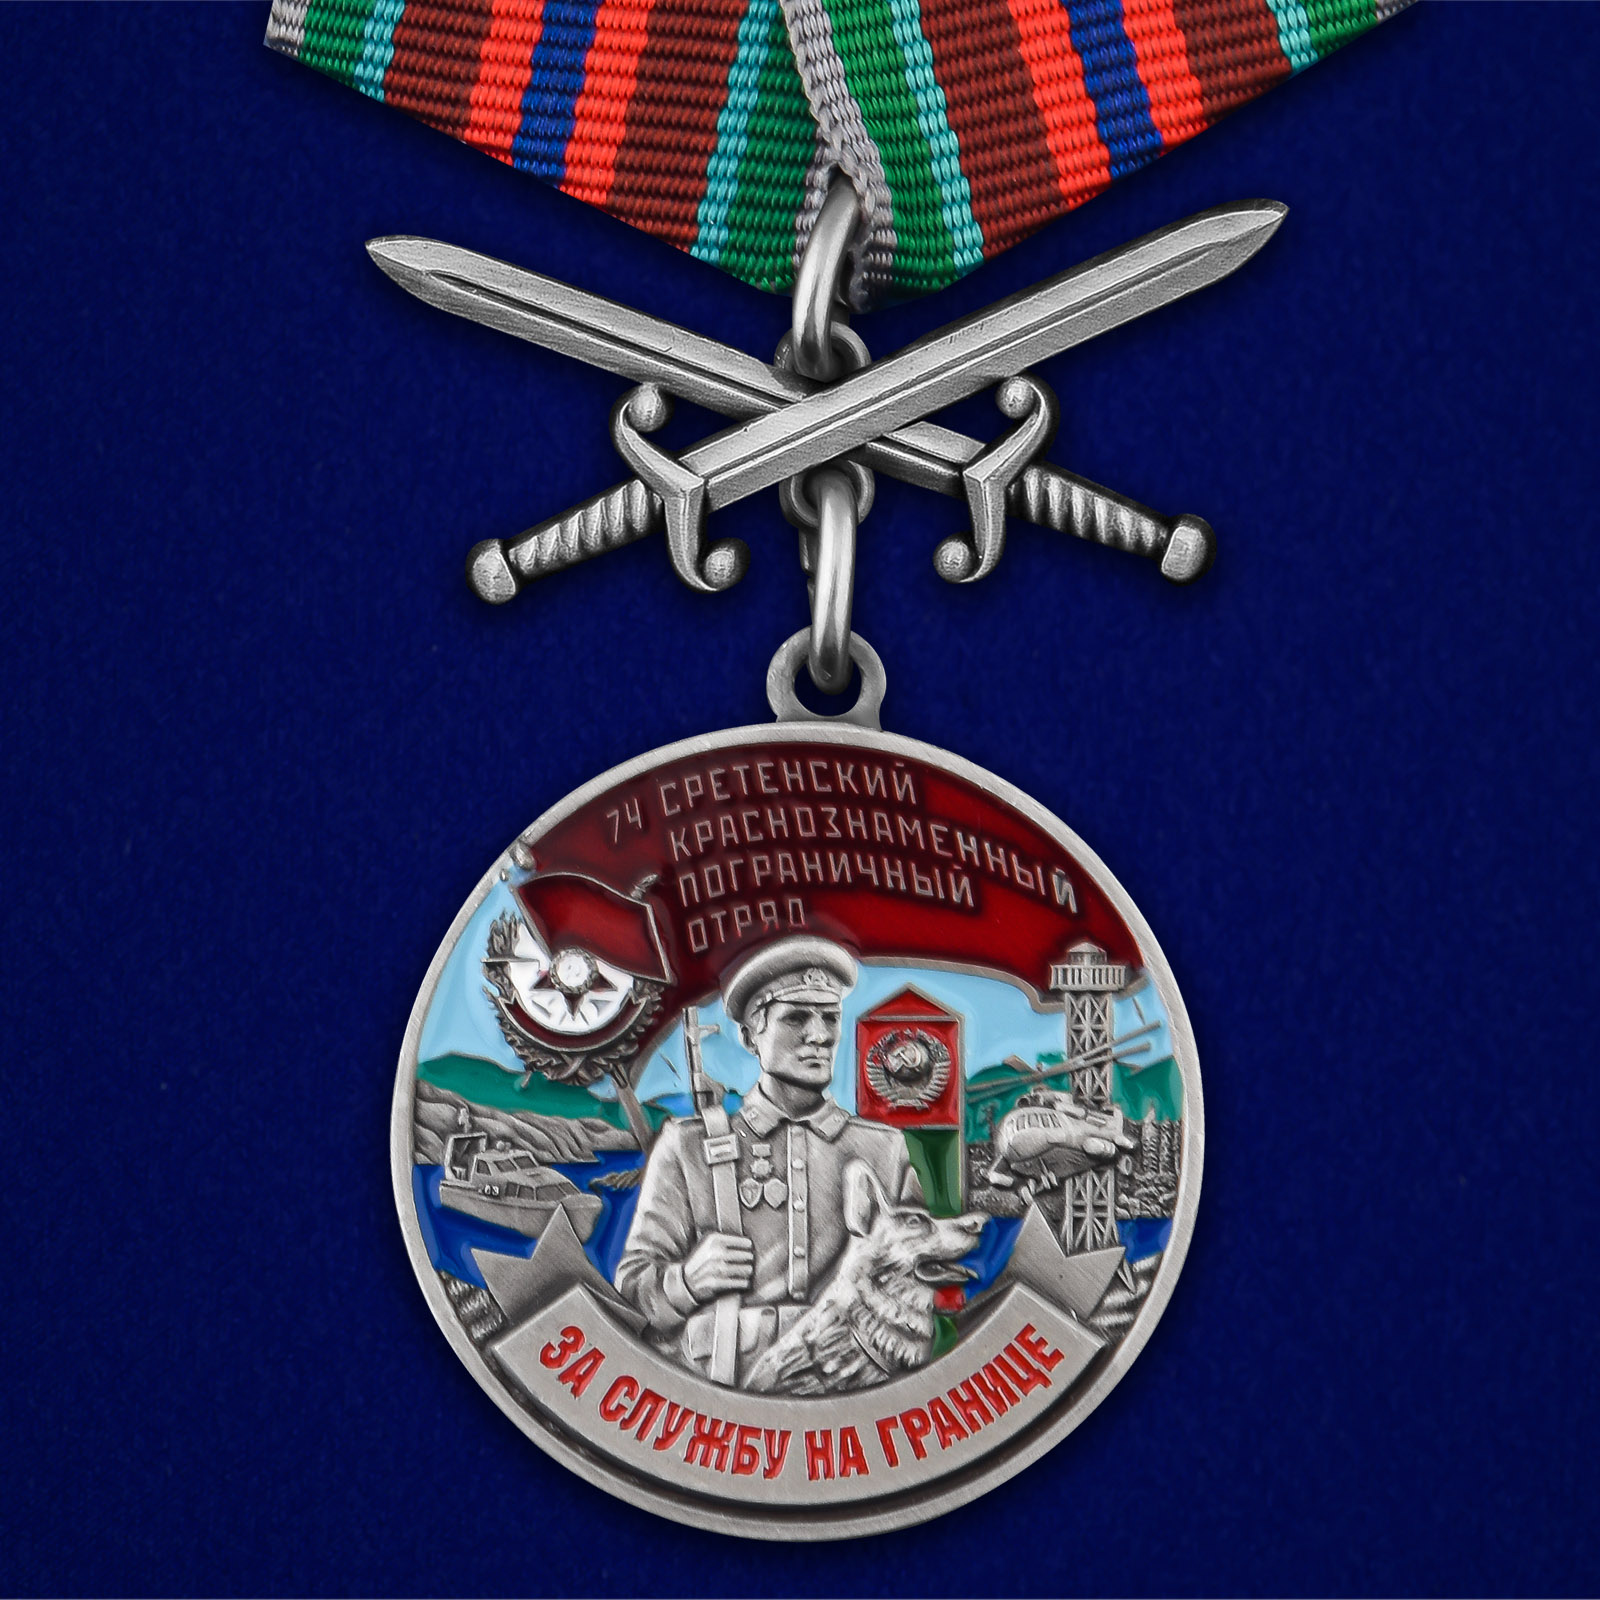 Купить медаль За службу в Сретенском пограничном отряде с мечами выгодно